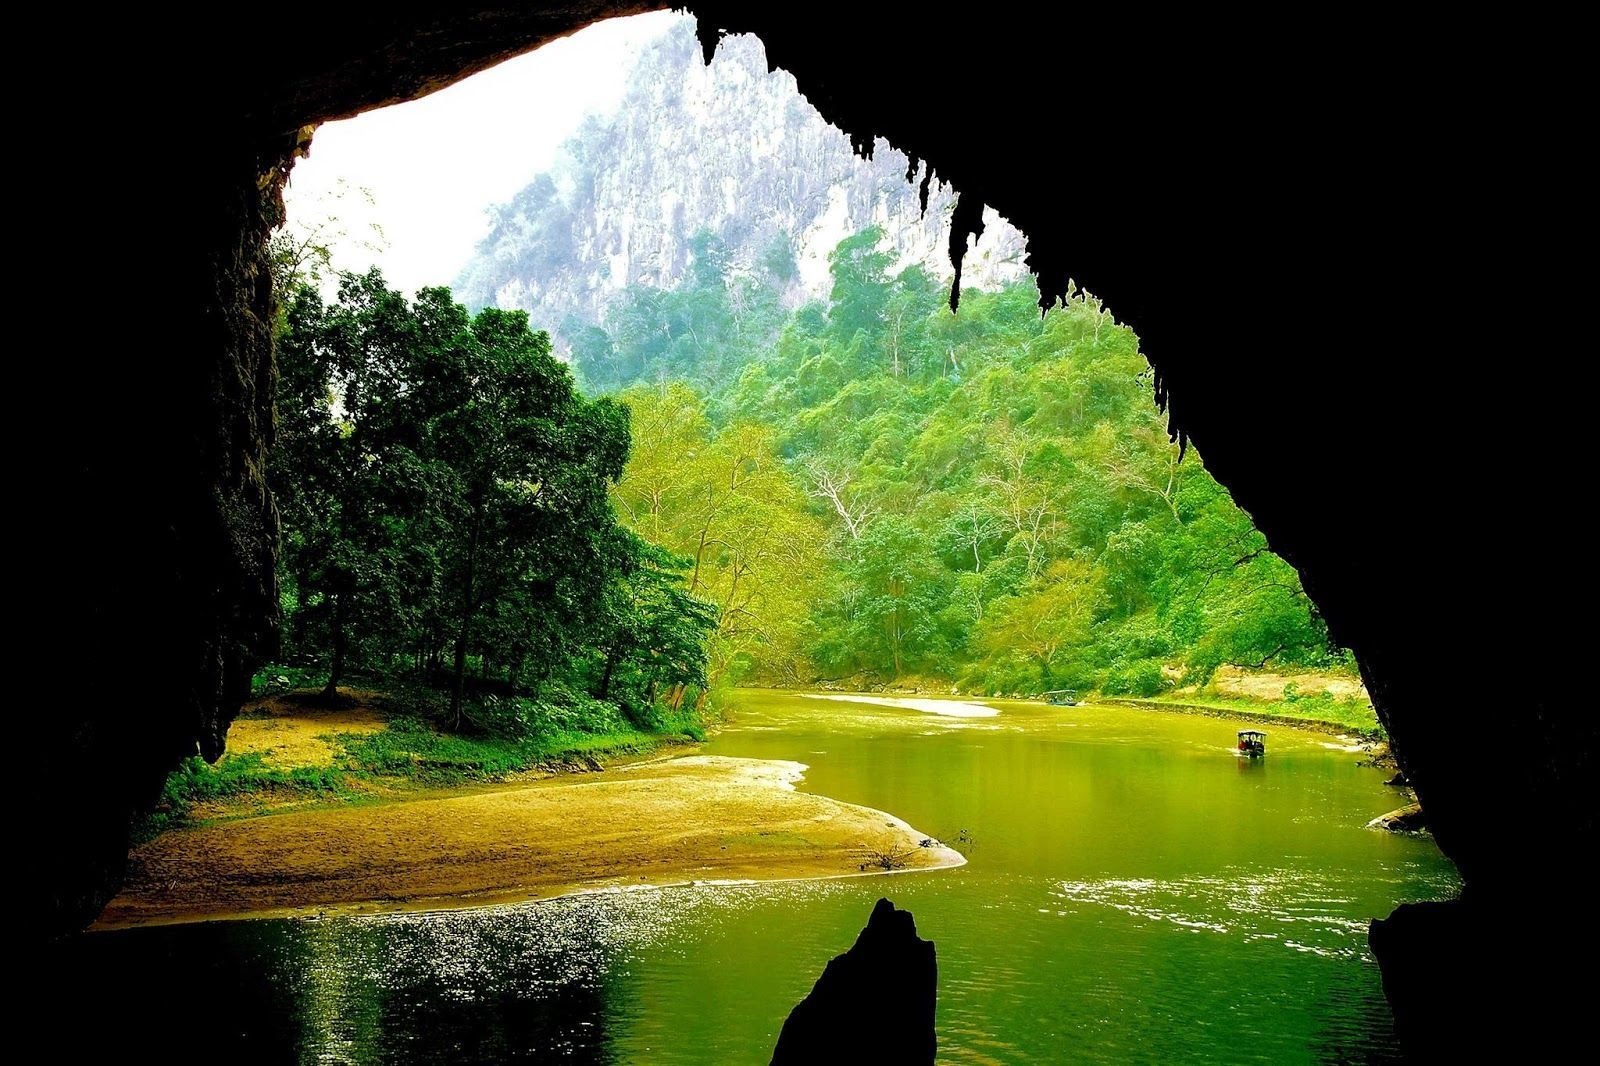 grotte de puong